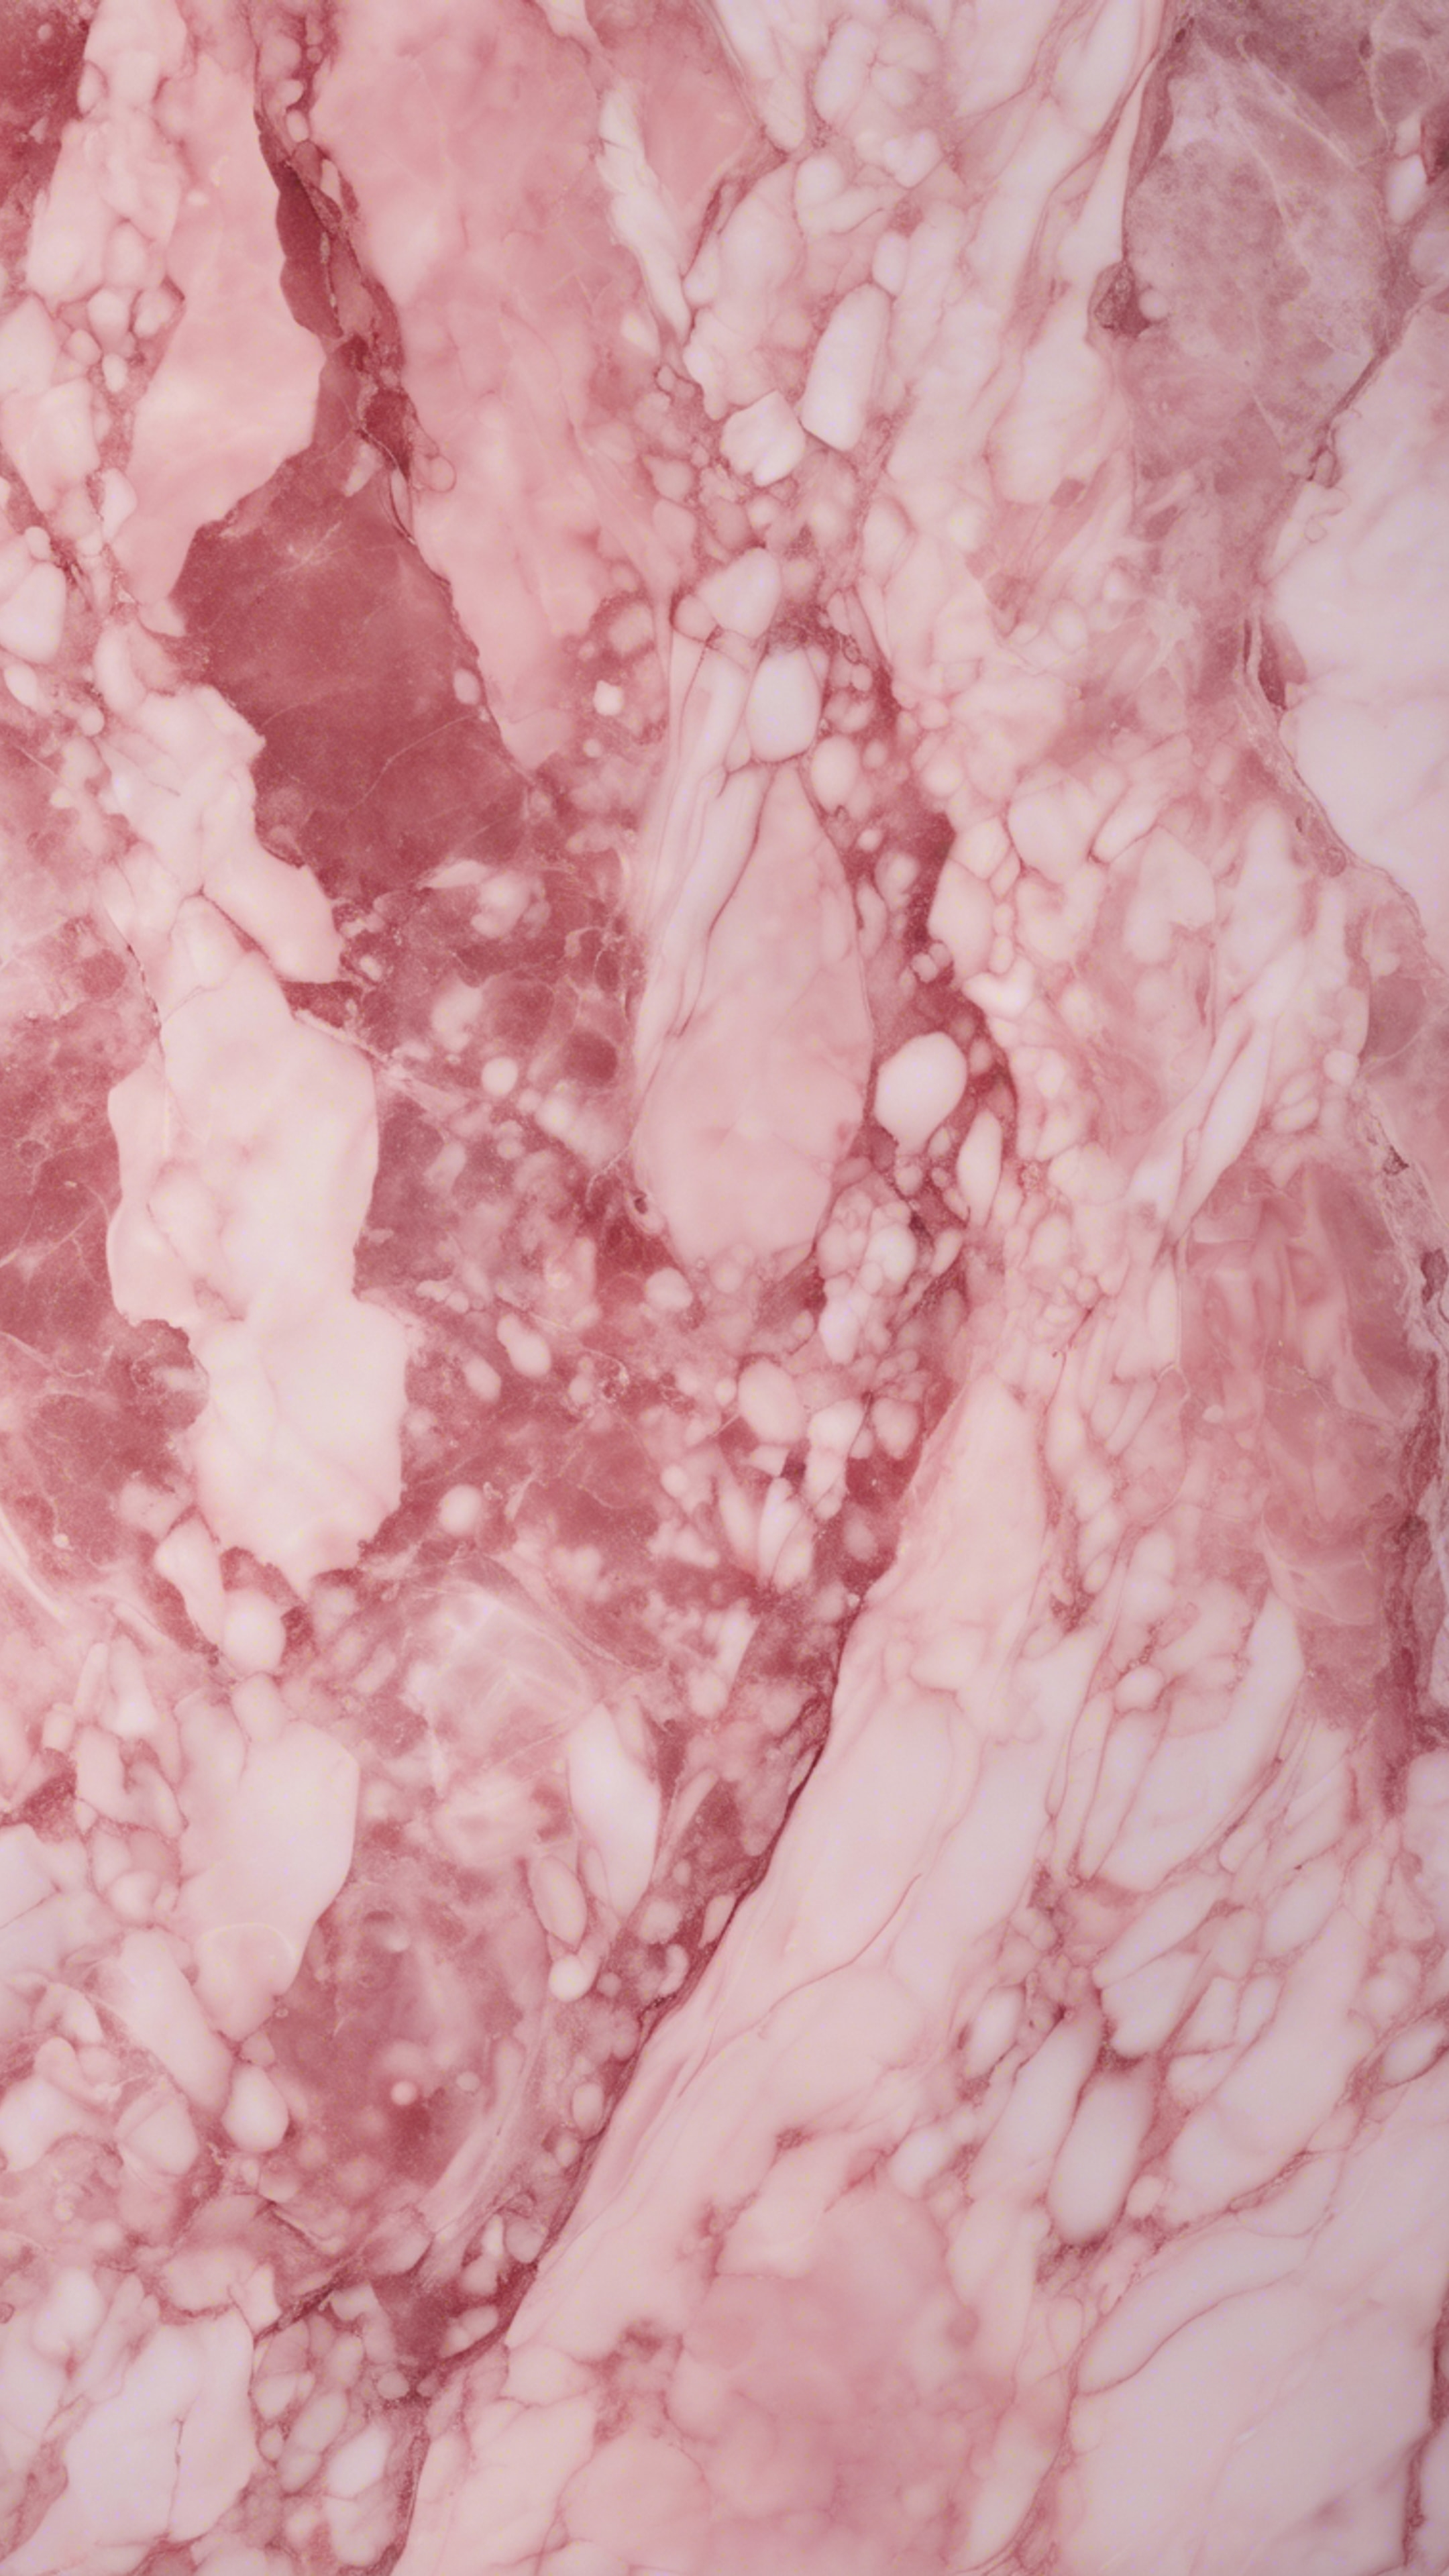 Pink marble texture viewed under faint sunlight. Behang[45cdb092df8543e48e23]